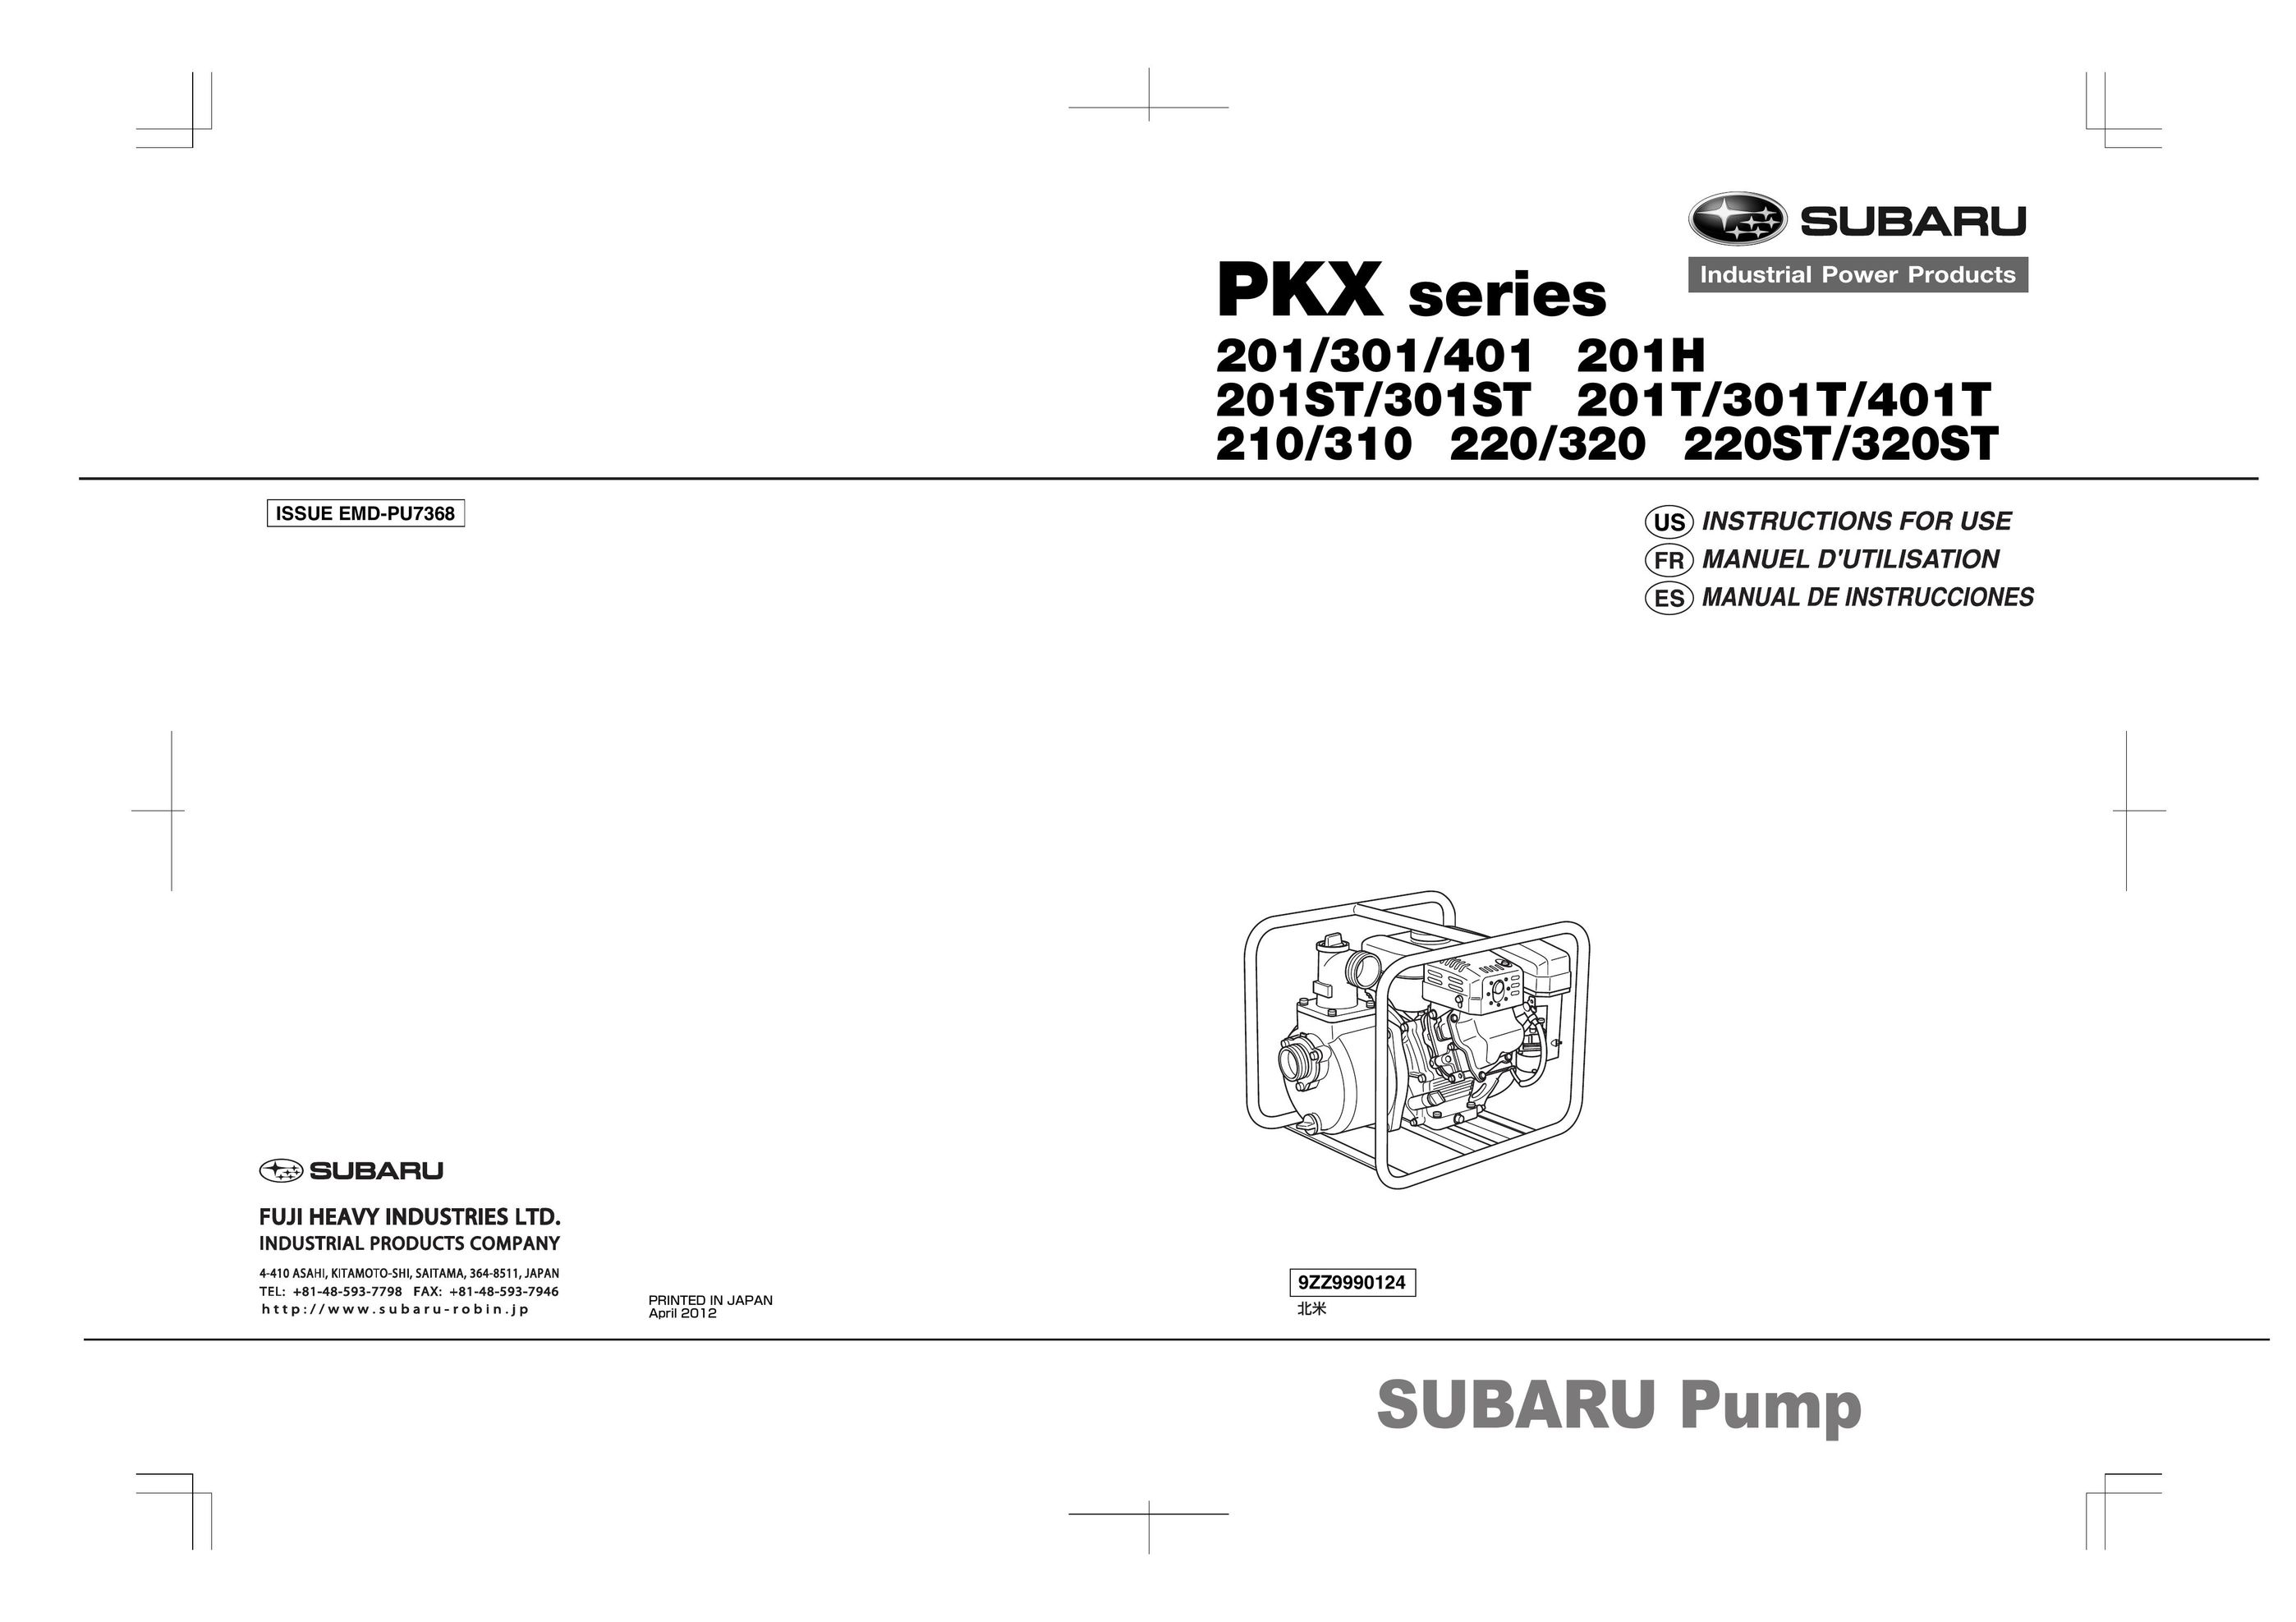 Subaru 320ST Heat Pump User Manual